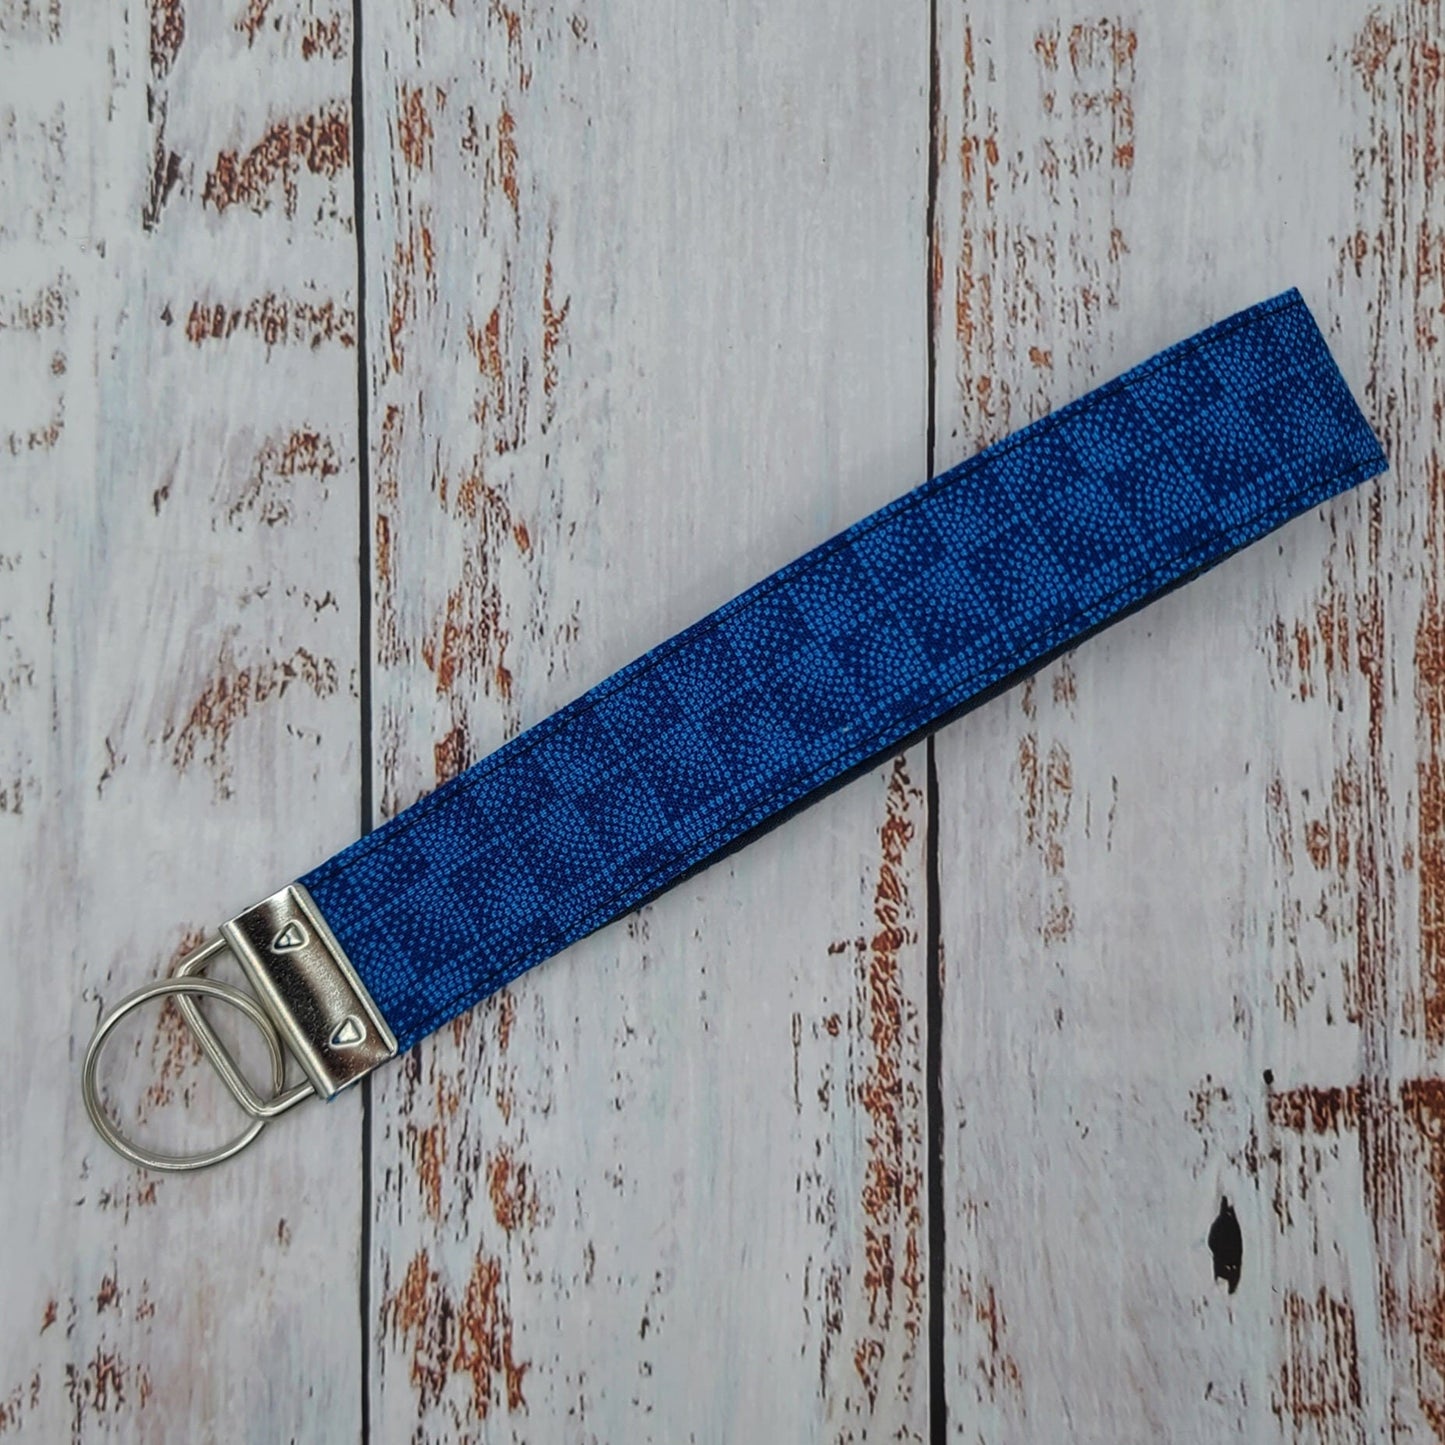 Porte-clé - PERSONNALISÉ - Dragonne - Poignet - Motifs Bleu royal et marin - Bande grise foncée